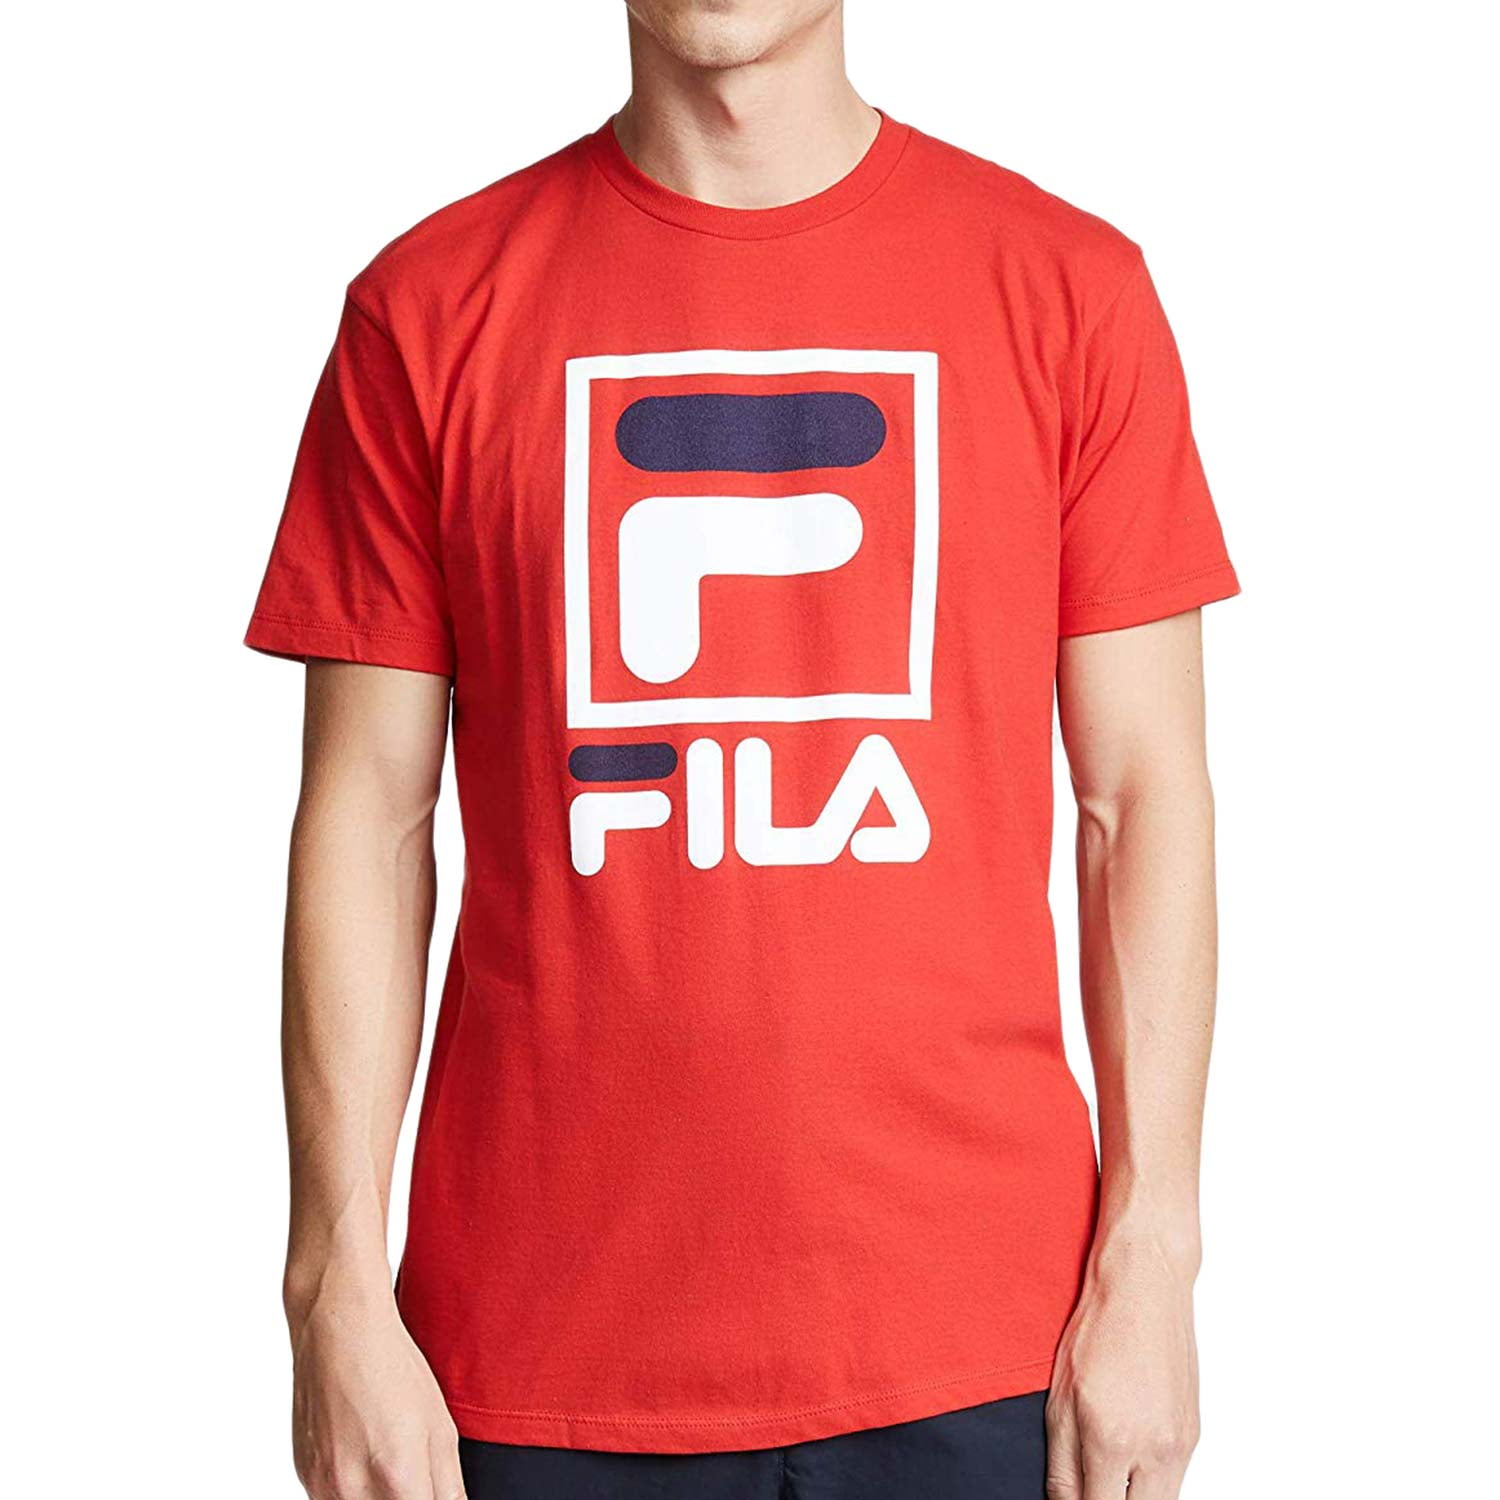 FILA - fila stacked t-shirt - men's - Walmart.com - Walmart.com